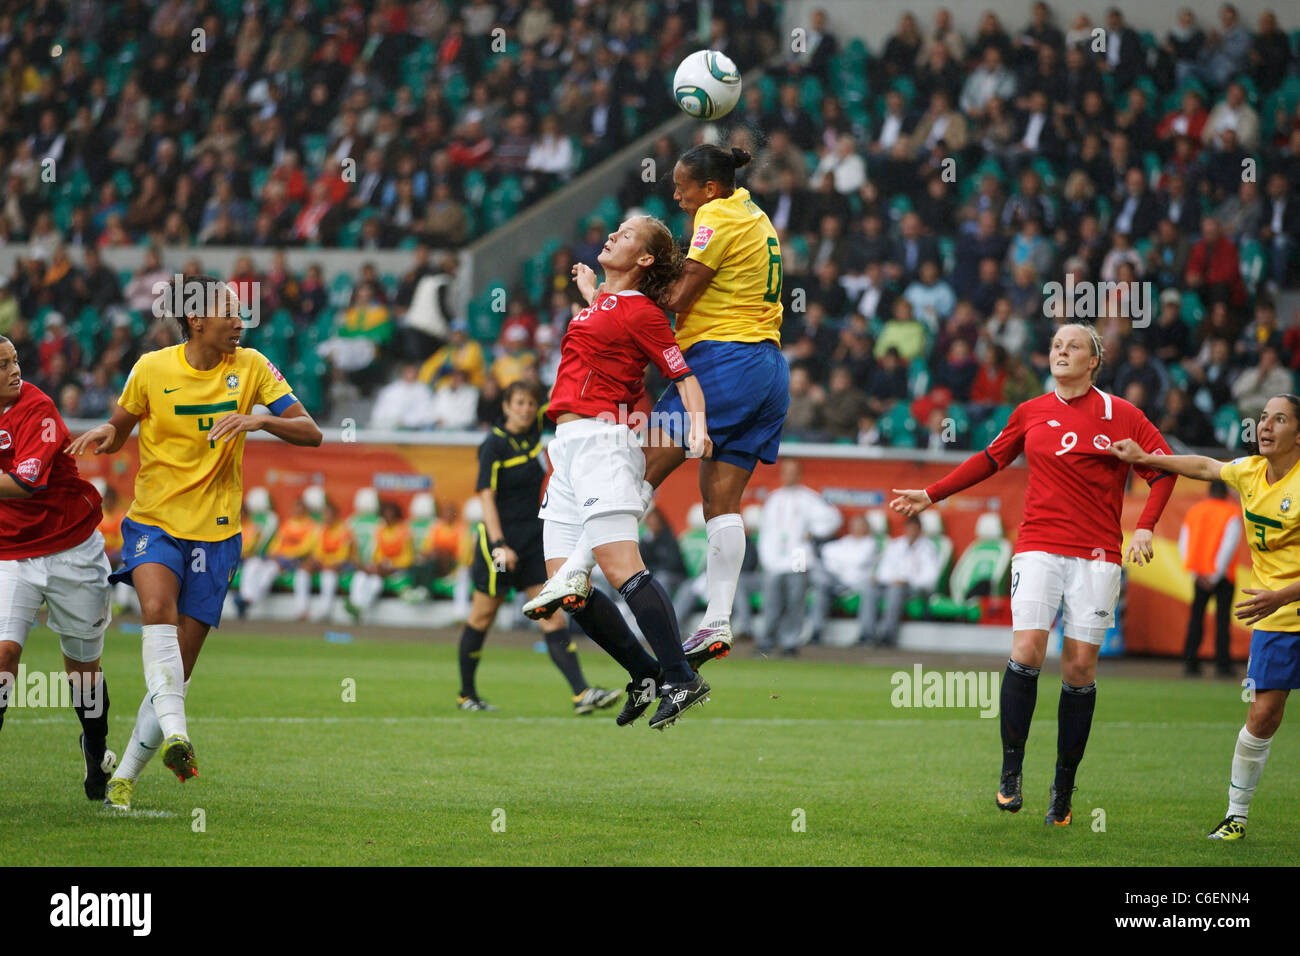 Madeleine Giske von Norwegen (l) und Rosana of Brazil (r) Sprung nach dem Ball während einer FIFA Frauen WM Spiel 3. Juli 2011. Stockfoto